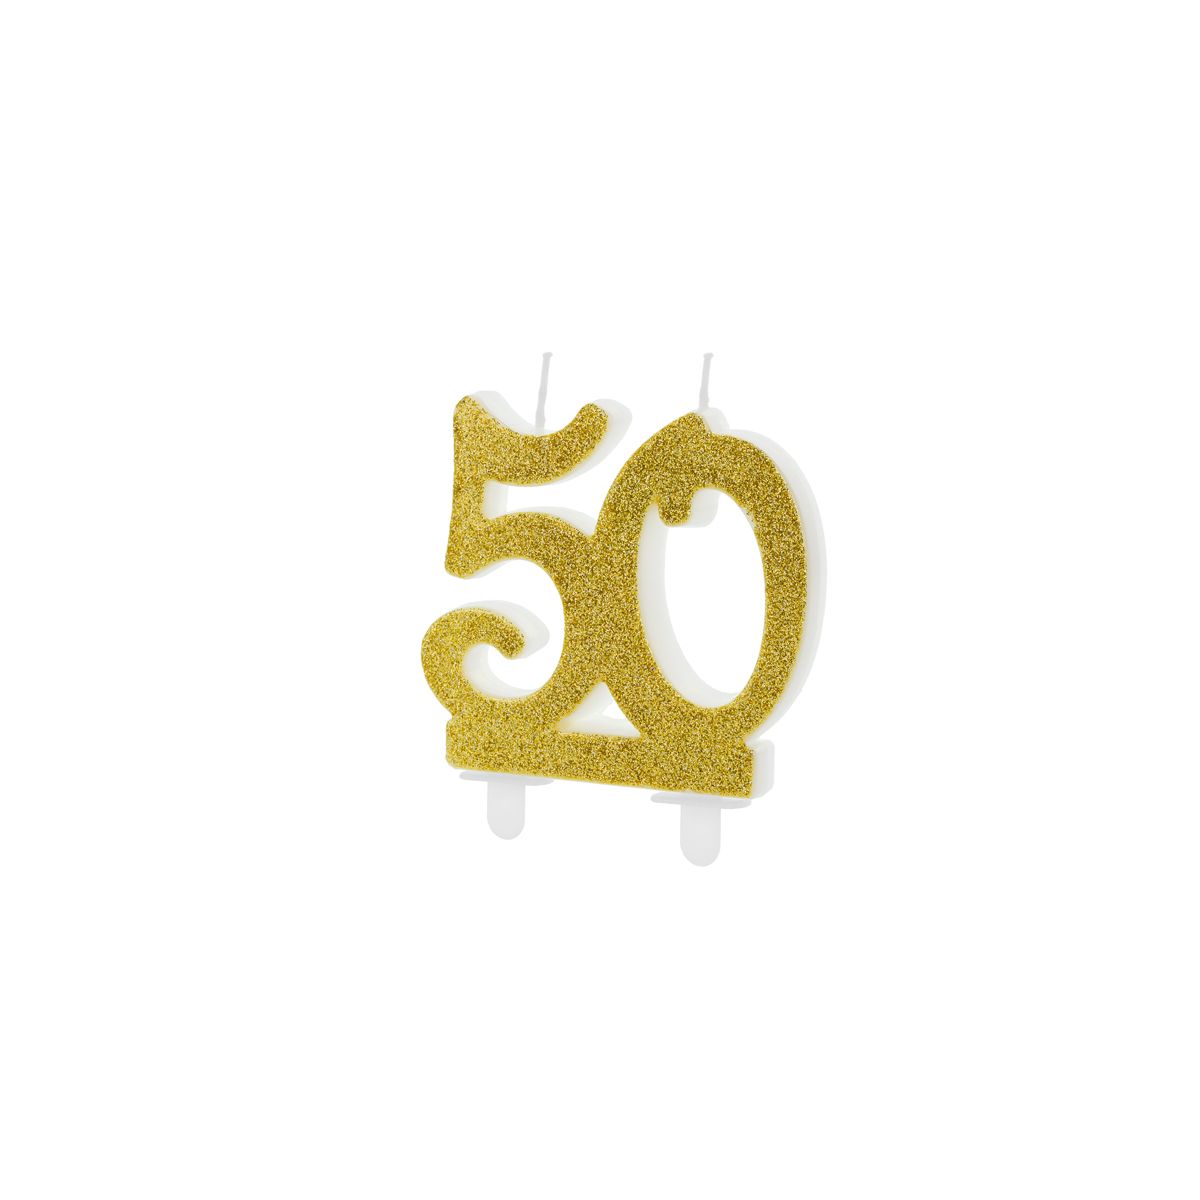 Świeczka urodzinowa liczba 50, złoty 7.5cm Partydeco (SCU5-50-019)